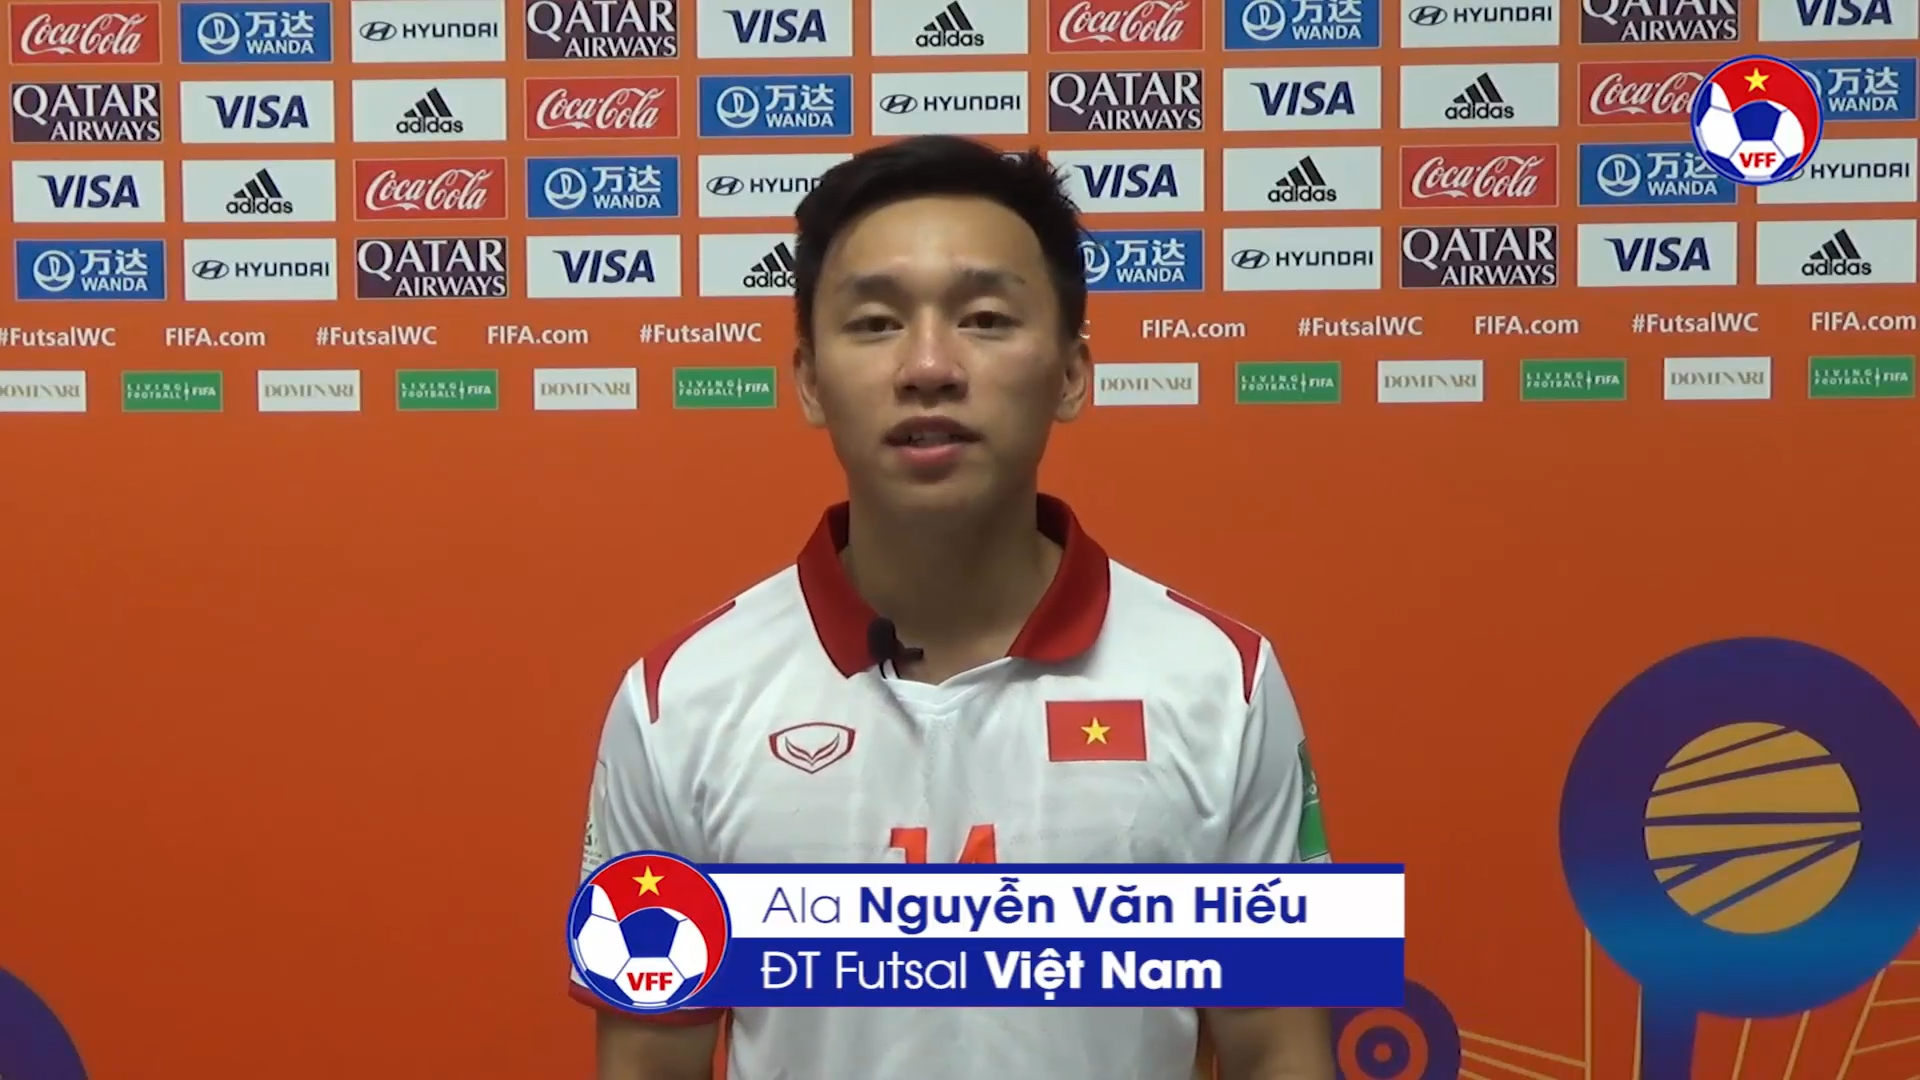 Vượt qua 300 đối thủ, sao trẻ ĐT Việt Nam được FIFA vinh danh với siêu phẩm để đời ở World Cup